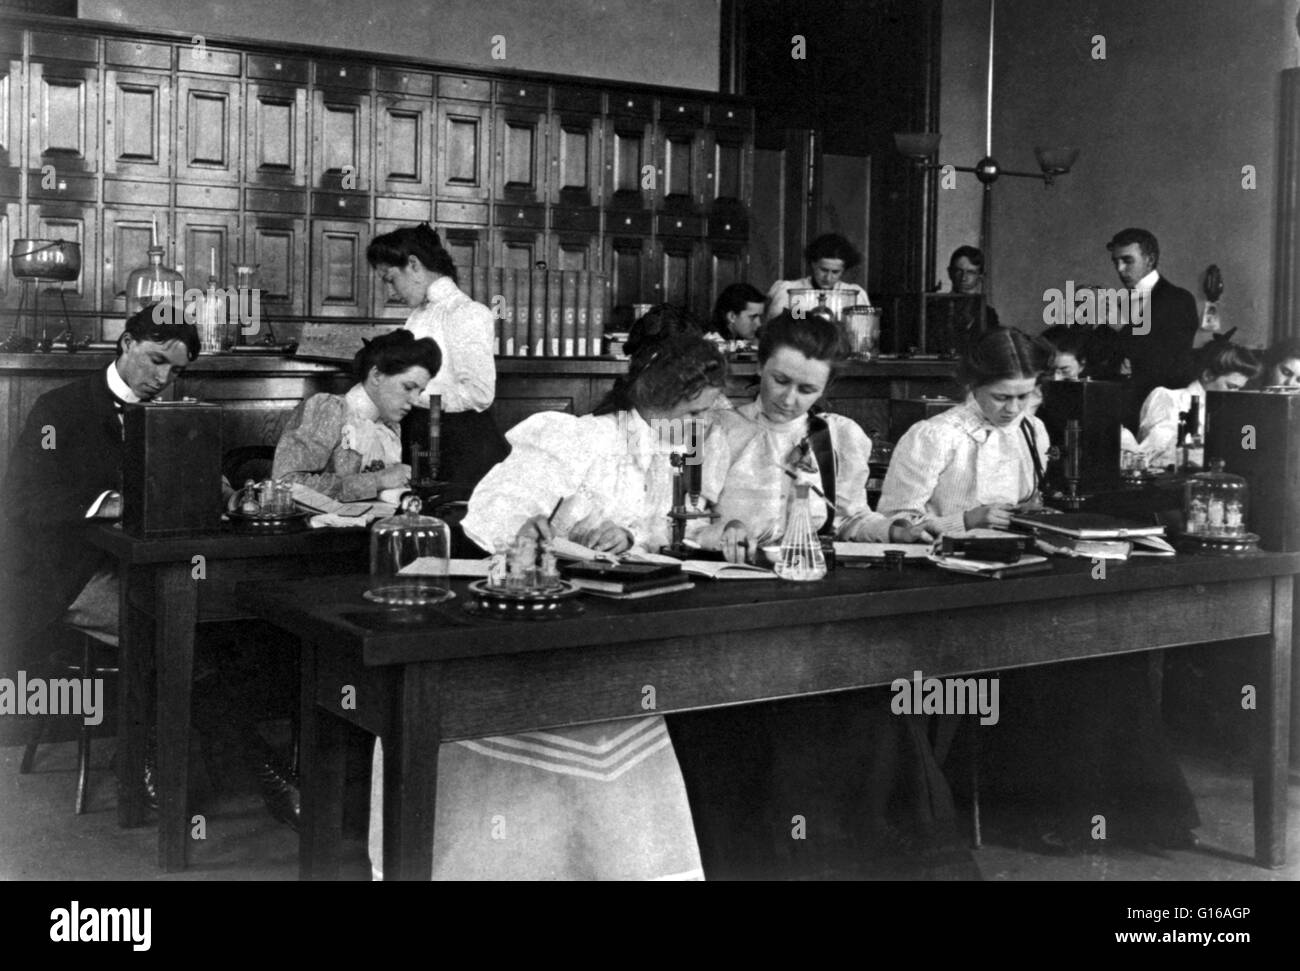 Studenten in einem Science-Klasse Mikroskopie, ist Western High School in Washington High-School eine Institution, die ganz oder teilweise der Sekundarstufe i bietet. Fotografiert von Frances "Fannie" Benjamin Johnston (15. Januar 1864 - 16. Mai 1952) war Stockfoto